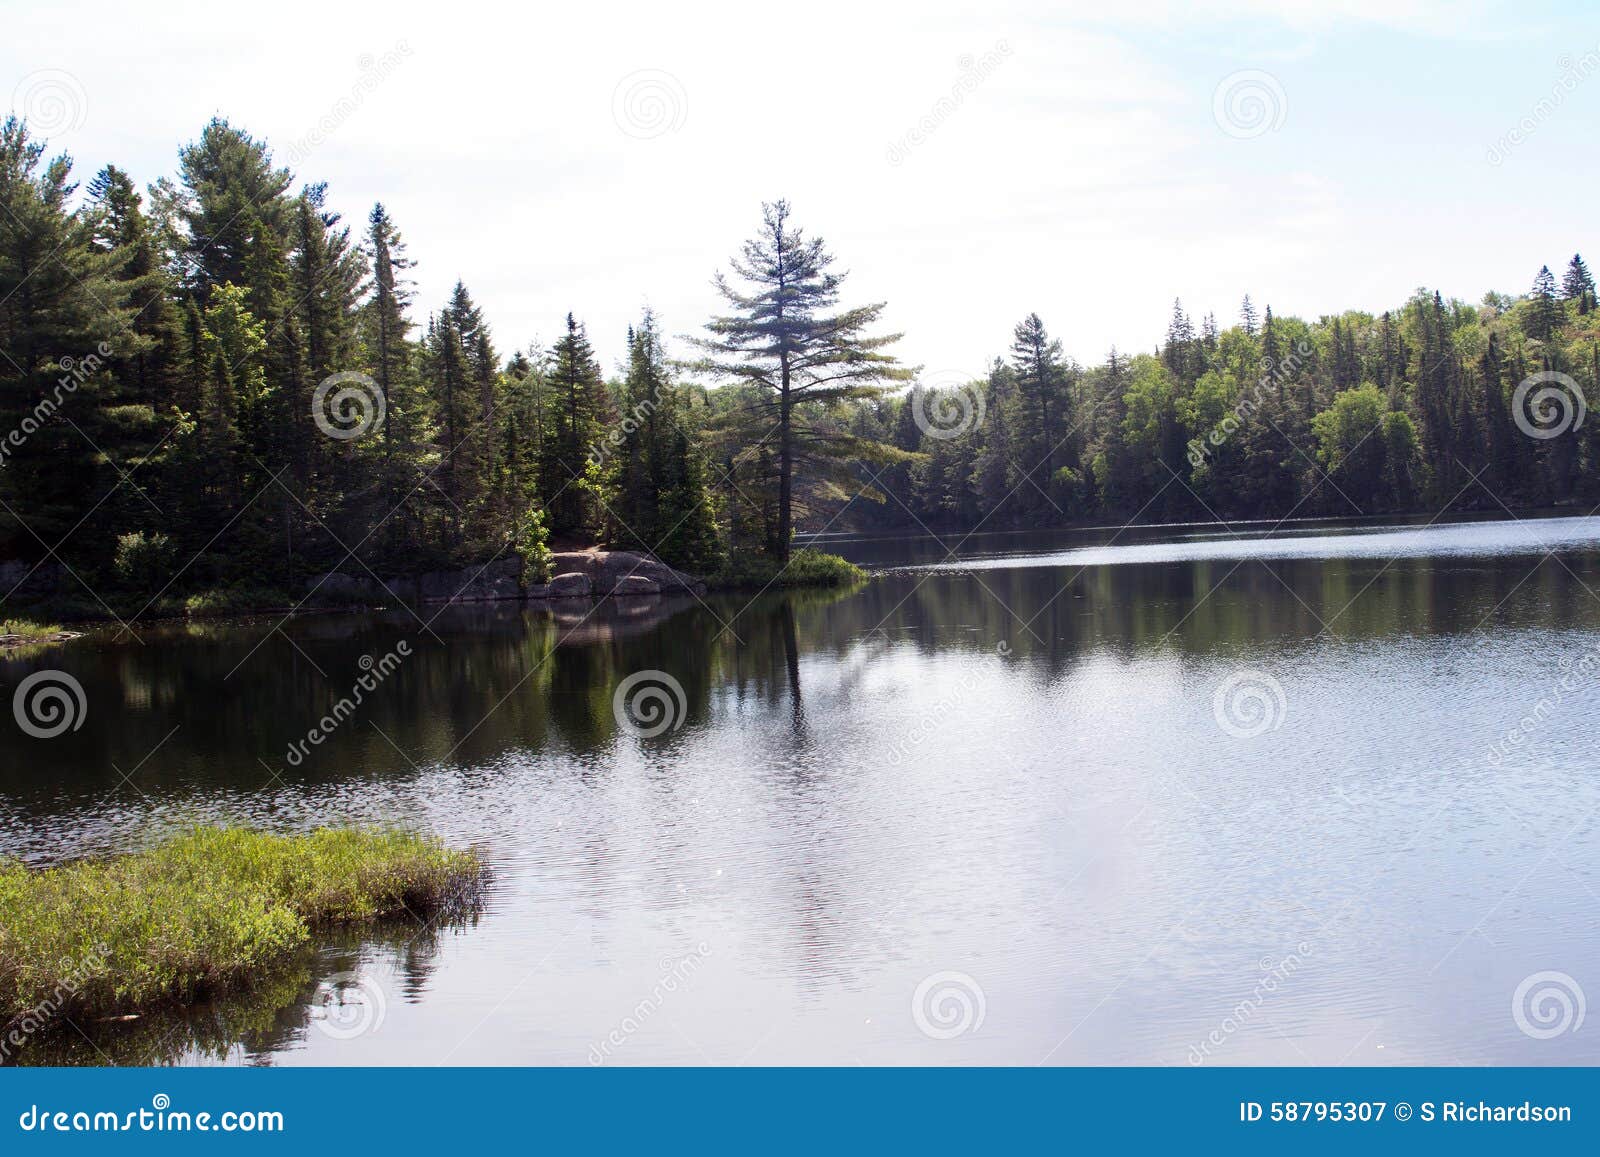 peck lake, algonquin provincial park 2